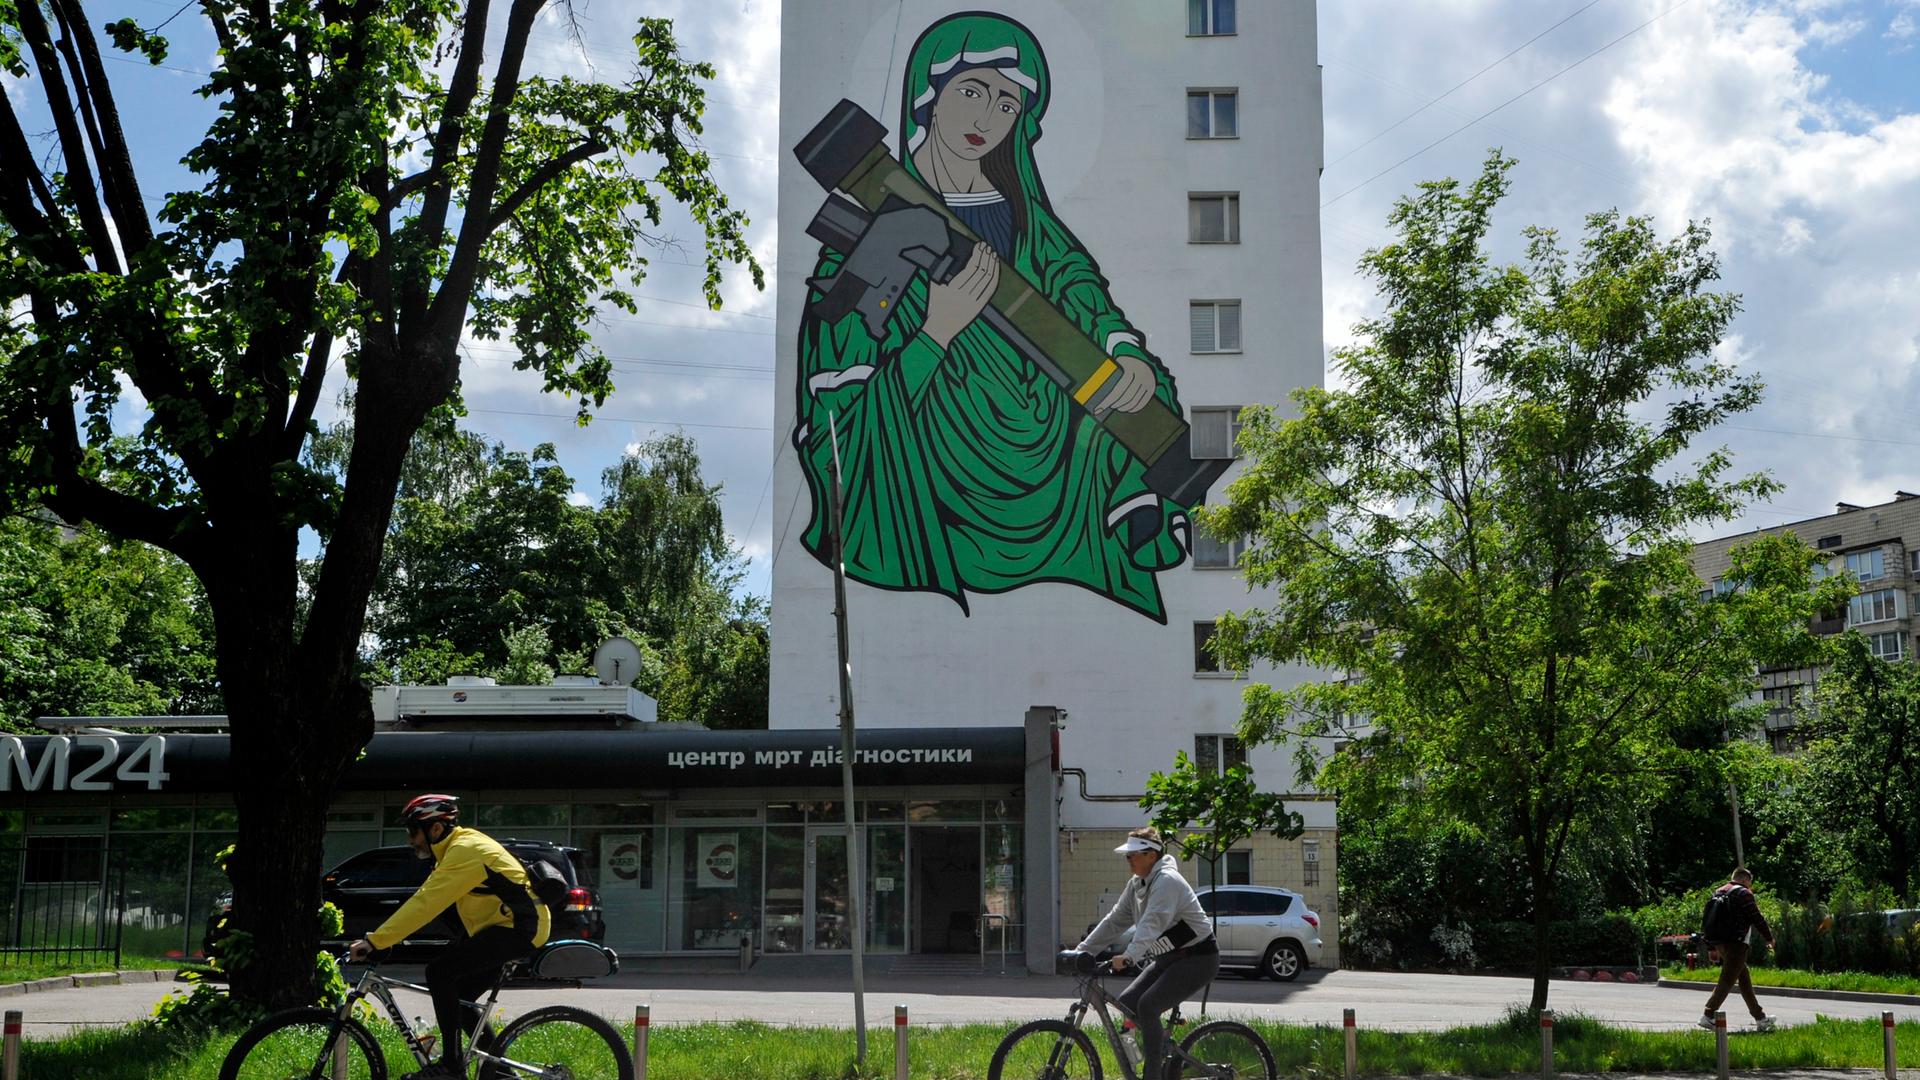 Radfahrer fahren an einem Wandgemälde vorbei, das die heilige Maria mit einer Panzerabwehrlenkwaffe in den Händen zeigt.